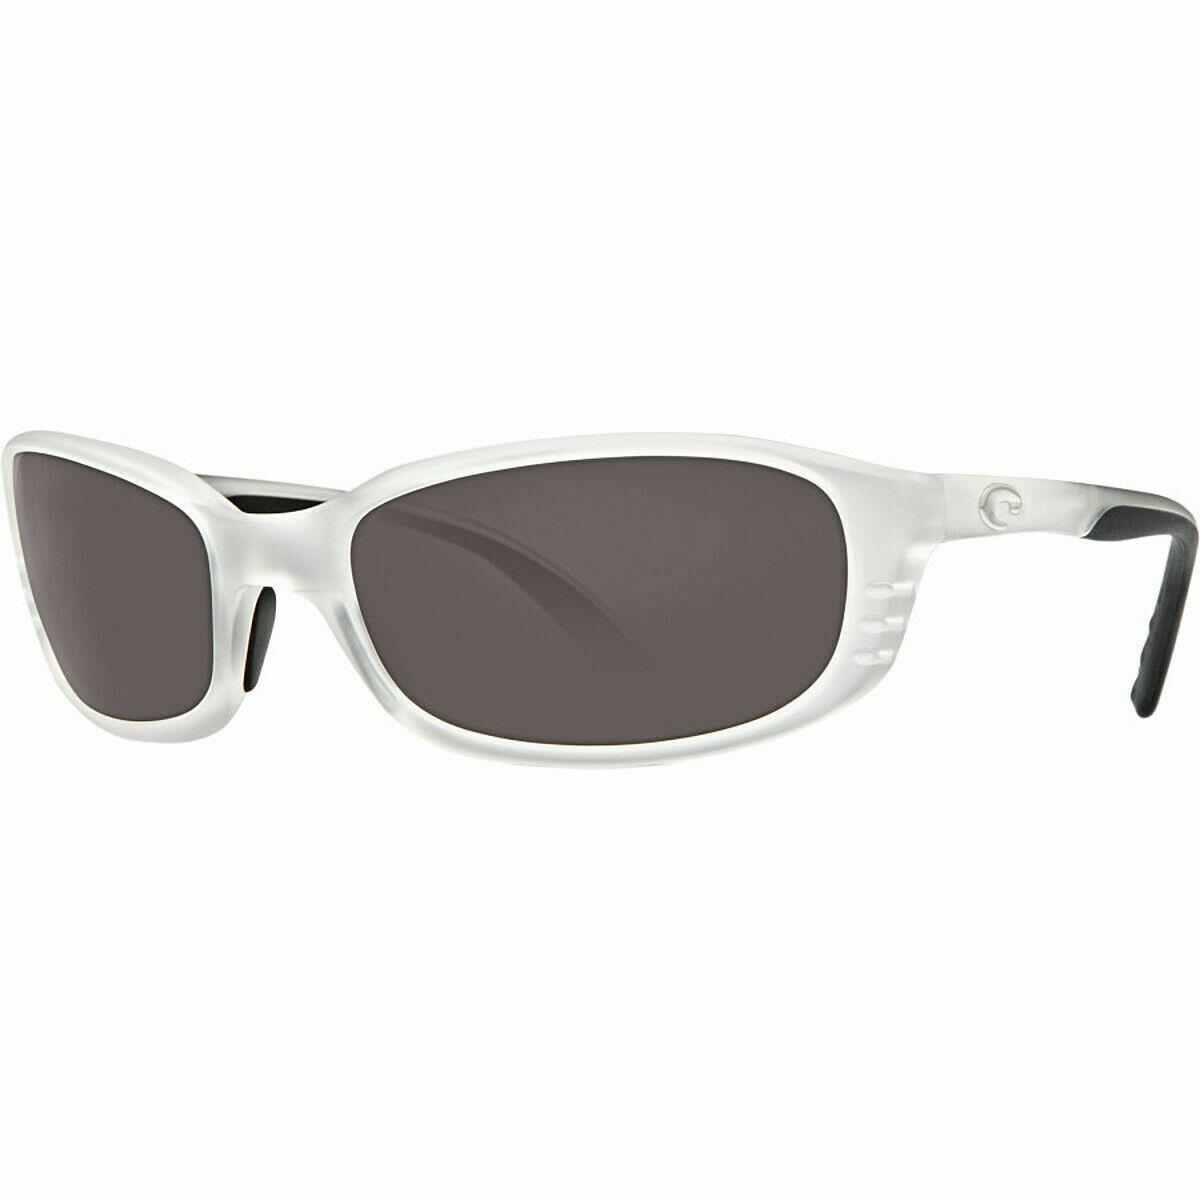 Costa Del Mar Brine Polarized Sunglasses Matte Crystal / Gray 580P